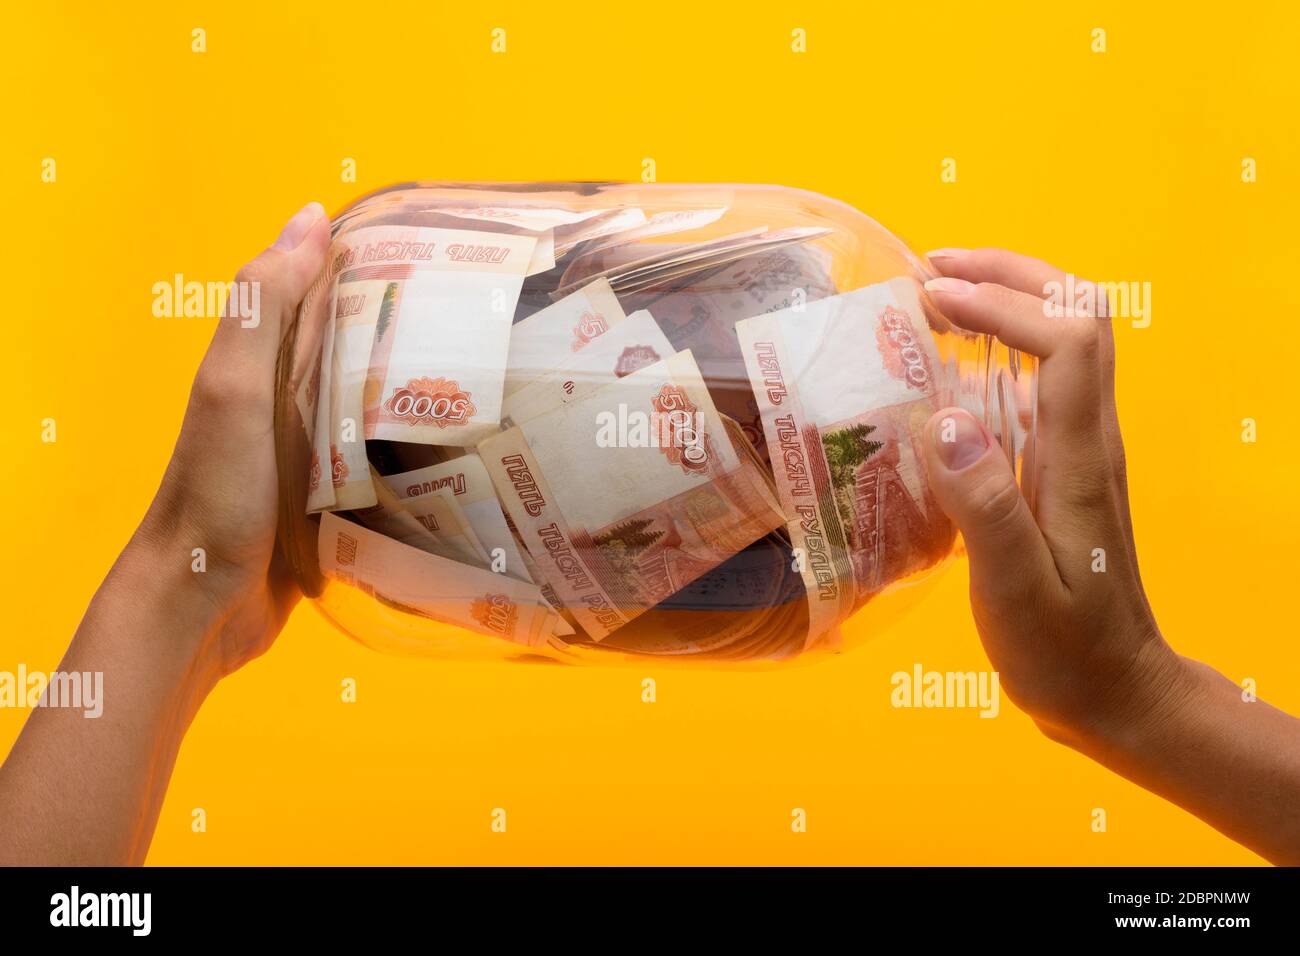 Hände halten ein drei-Liter-Glas, in dem liegen fünftausend Scheine, gelber Hintergrund Stockfoto